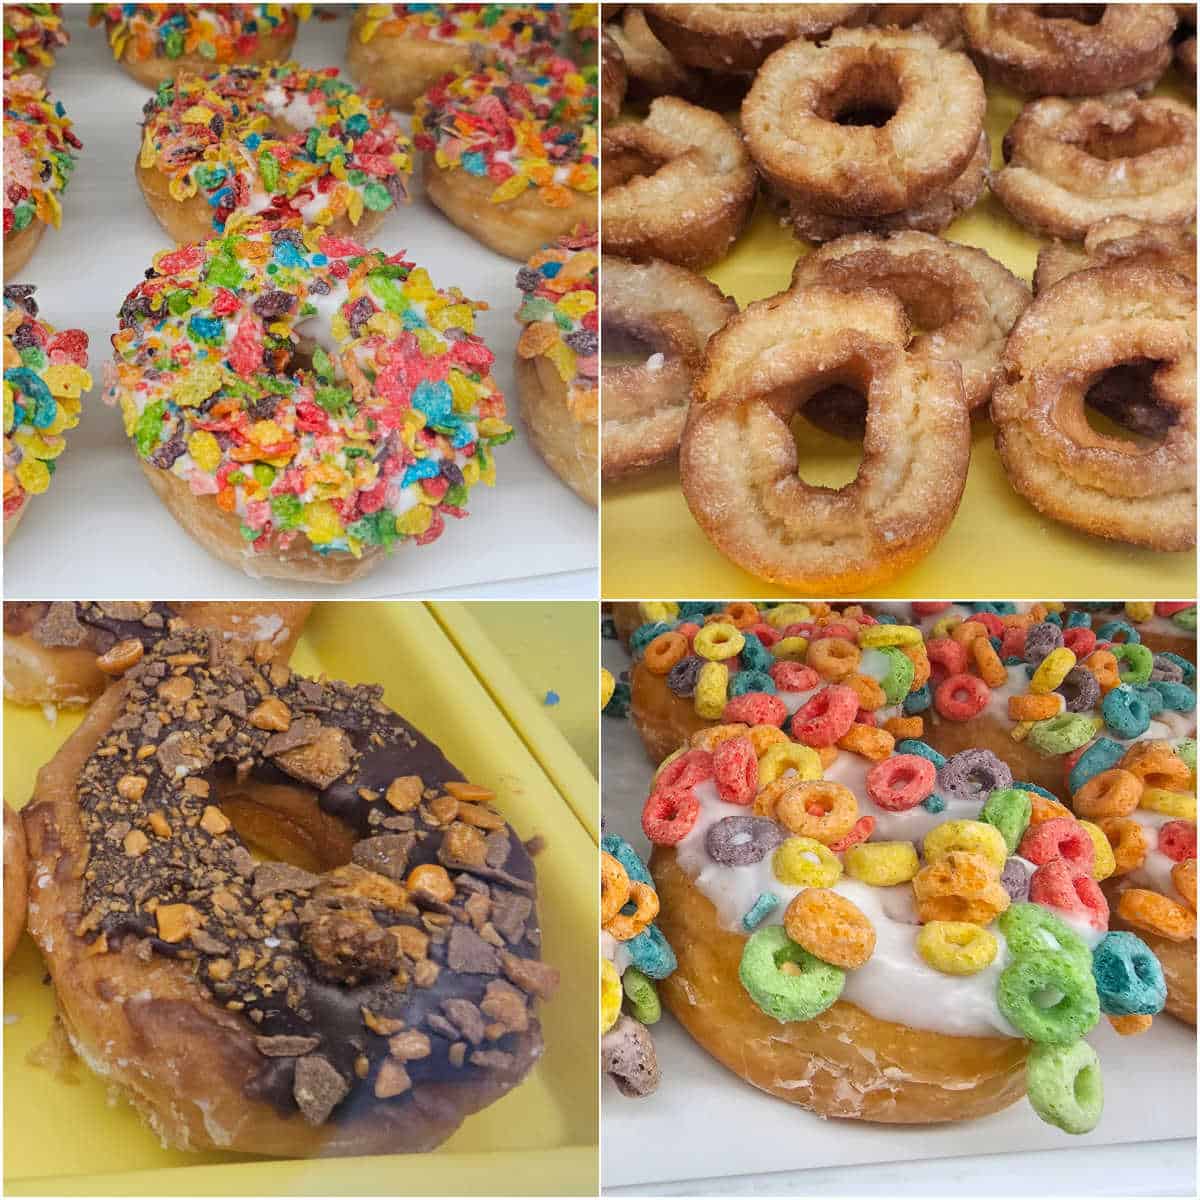 Best Donuts in Gulf Shores and Orange Beach, Al - Gulf Coast Journeys